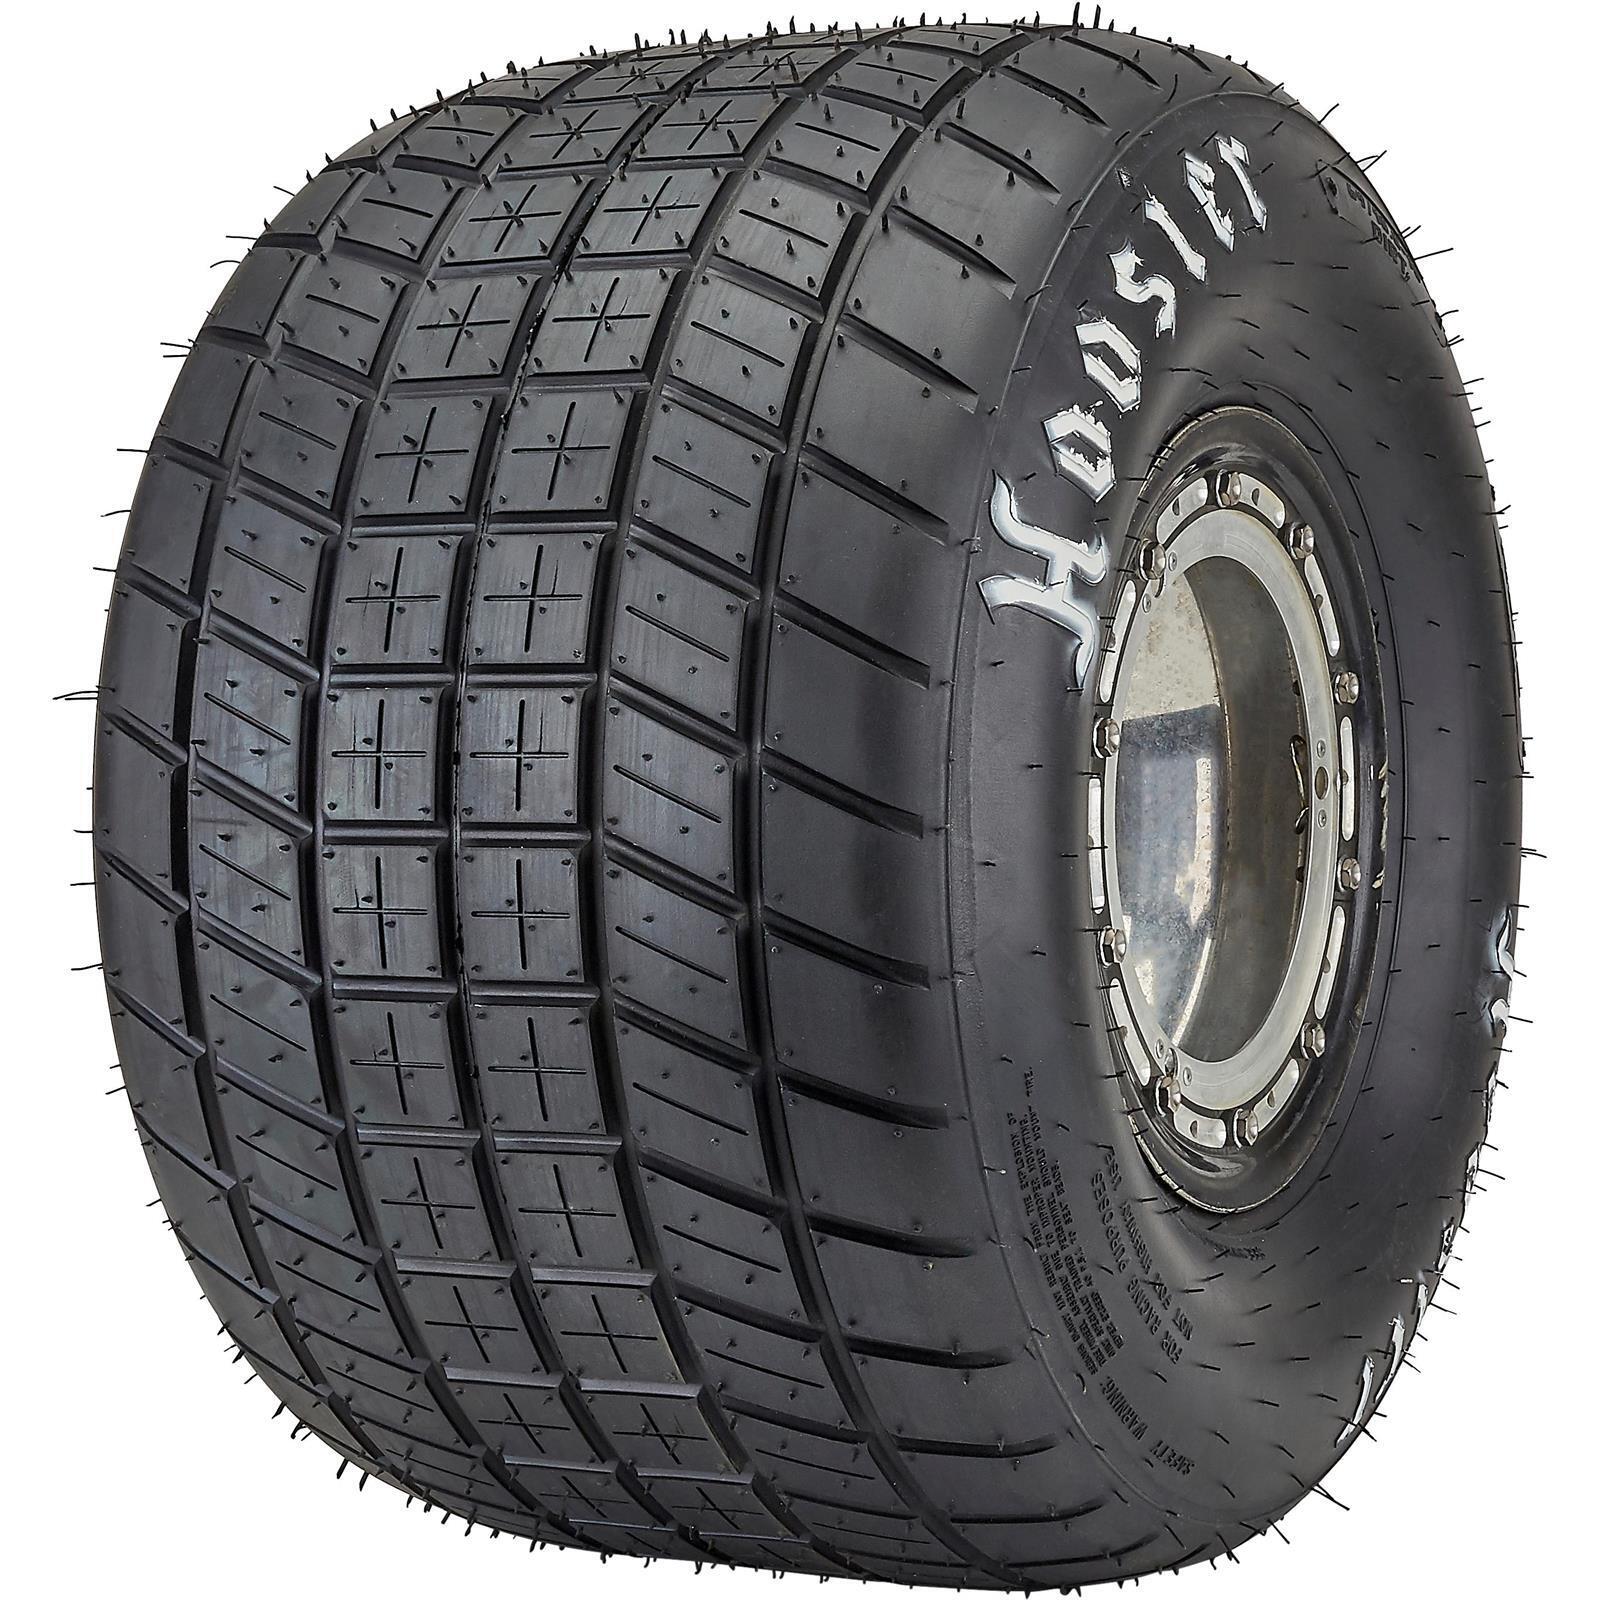 Hoosier 42237-D25 Midget/Micro/Jr Sprint Tire, 69.0/10.0-10 D25